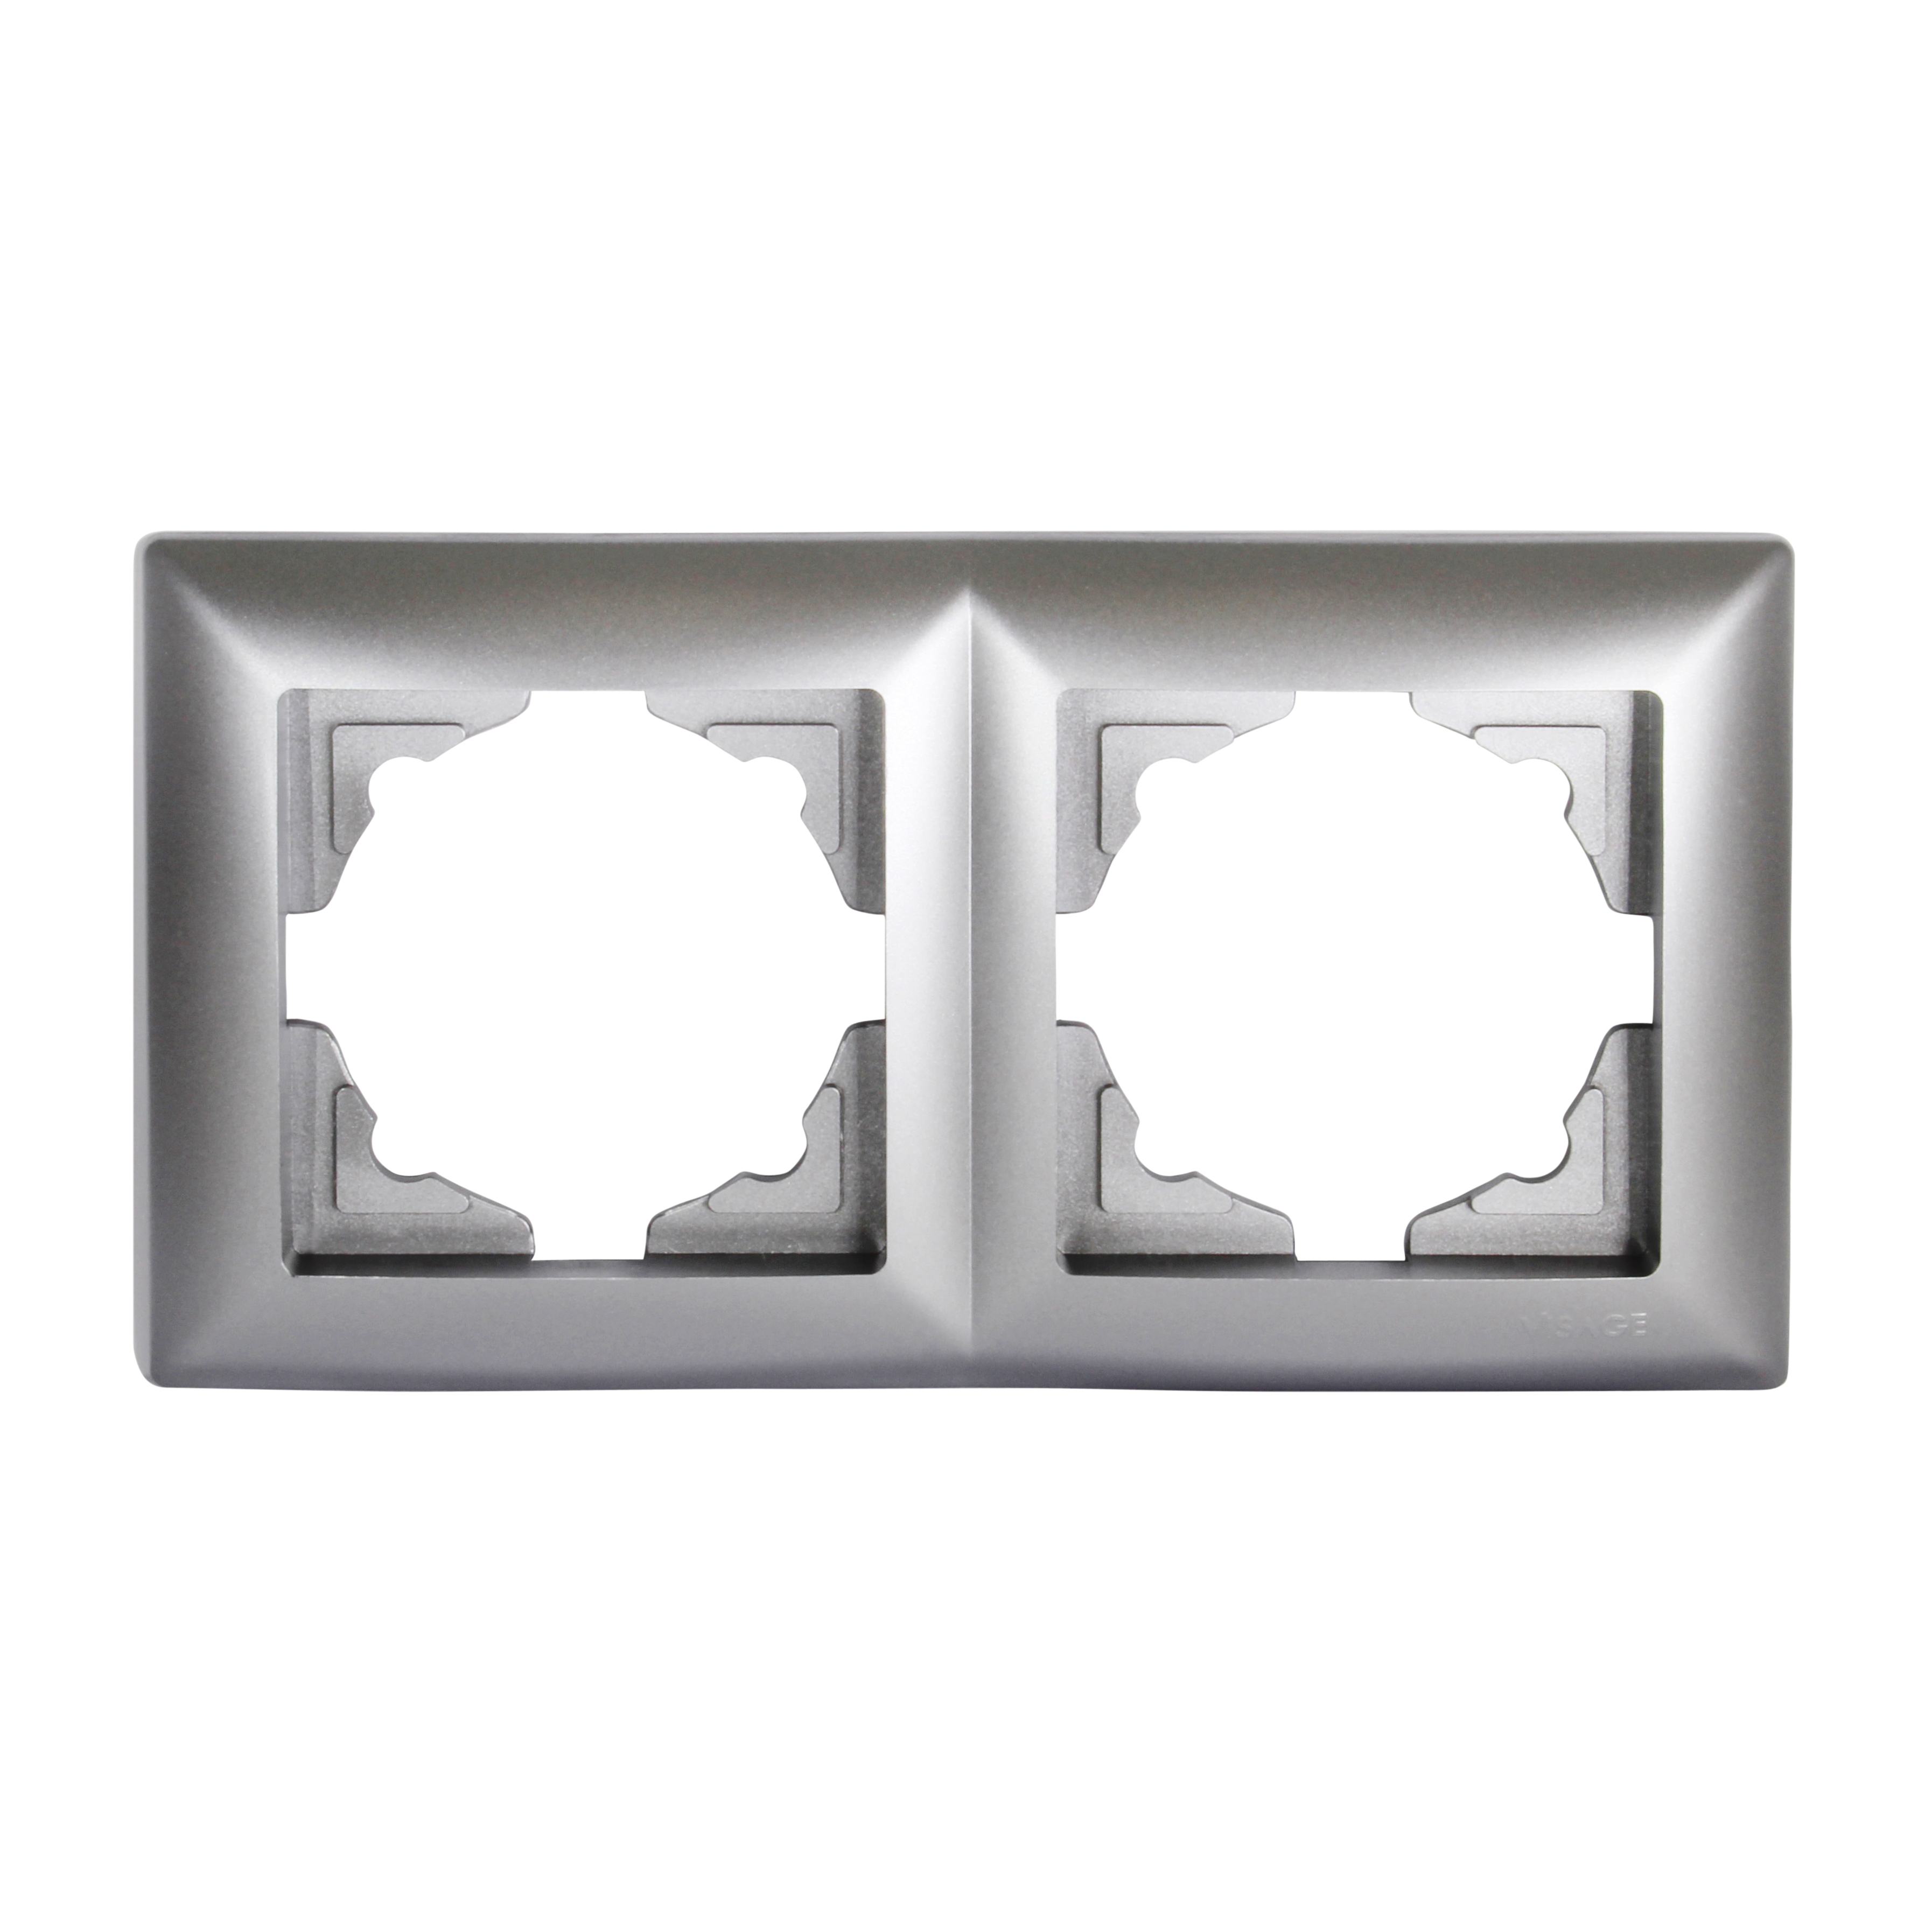 Gunsan Visage 2-fach Rahmen für 2 Steckdosen Schalter Dimmer Silber